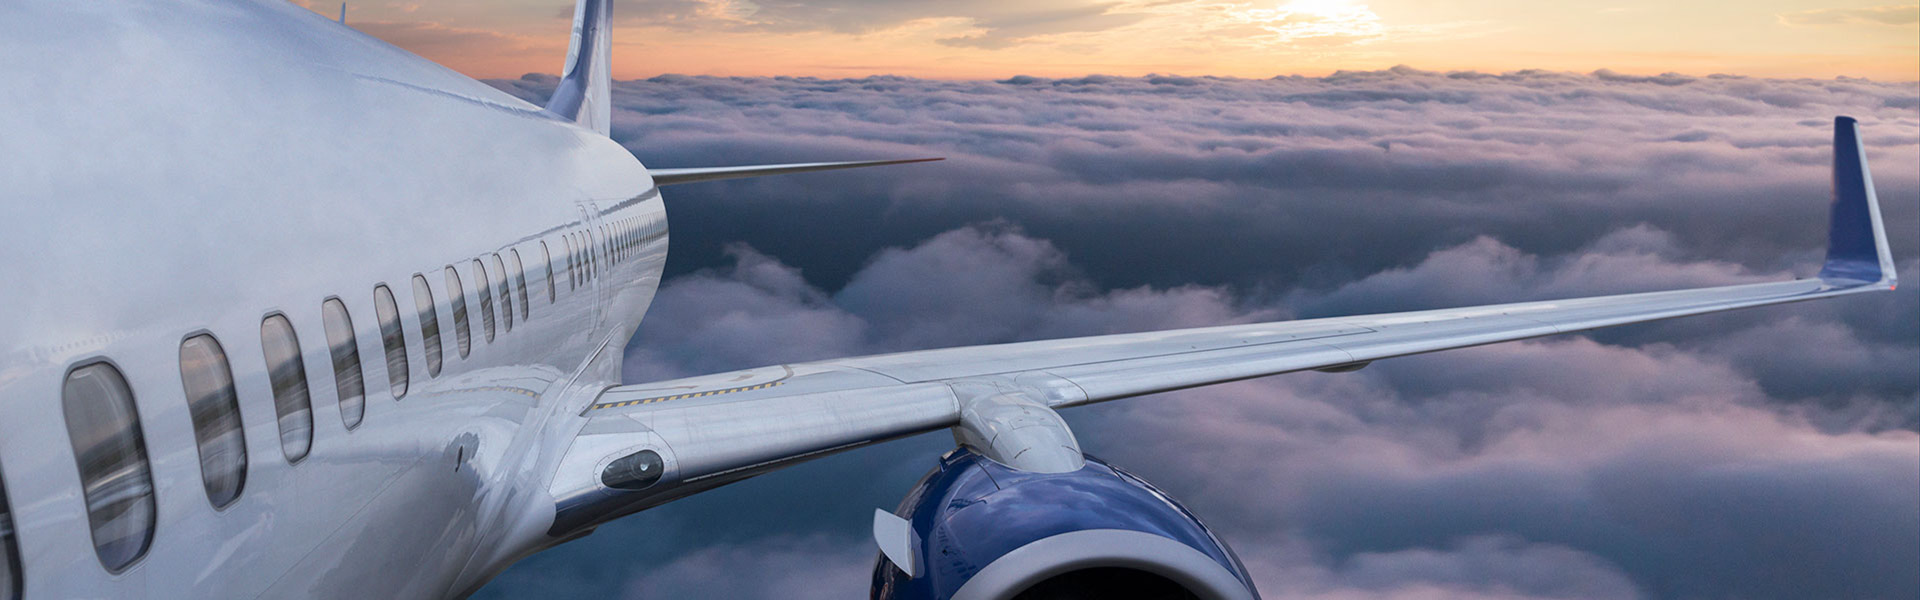 Ley 21.398 asegura nuevos derechos al momento de viajar en avión thumbnail